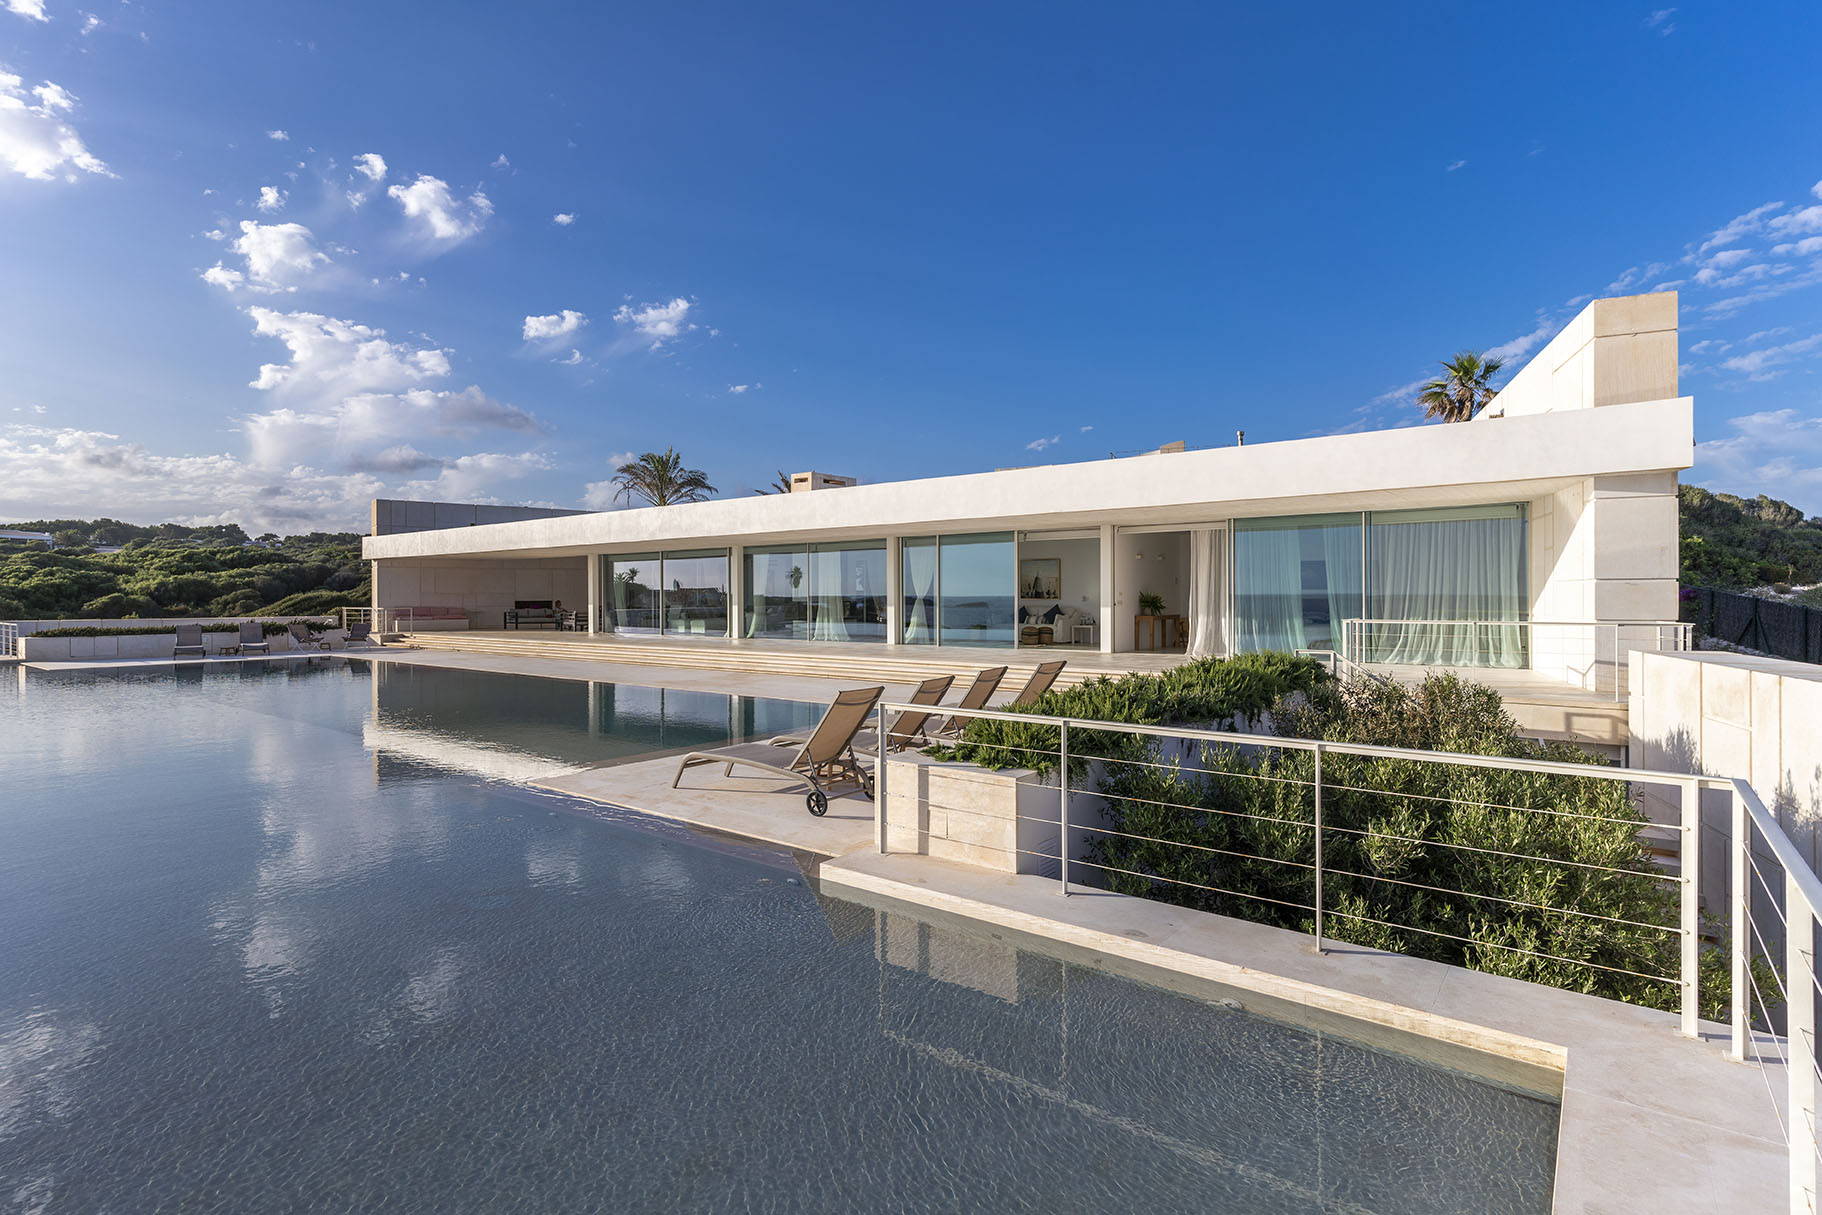 Impressionante villa in affitto con piscina di 40 metri a Minorca